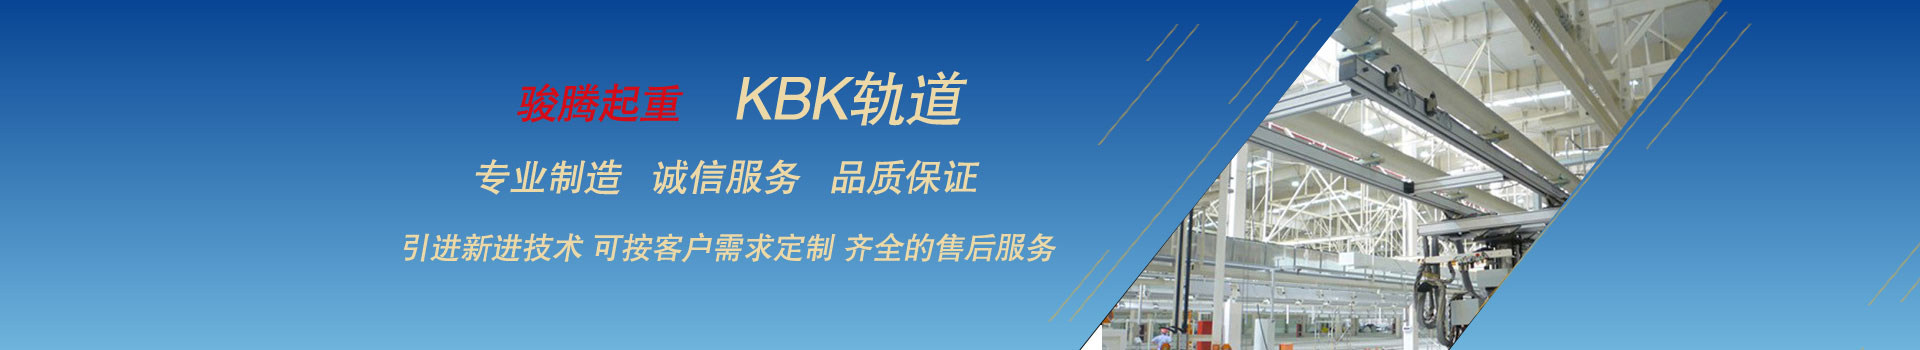 产品中心  /  KBK钢性轨道